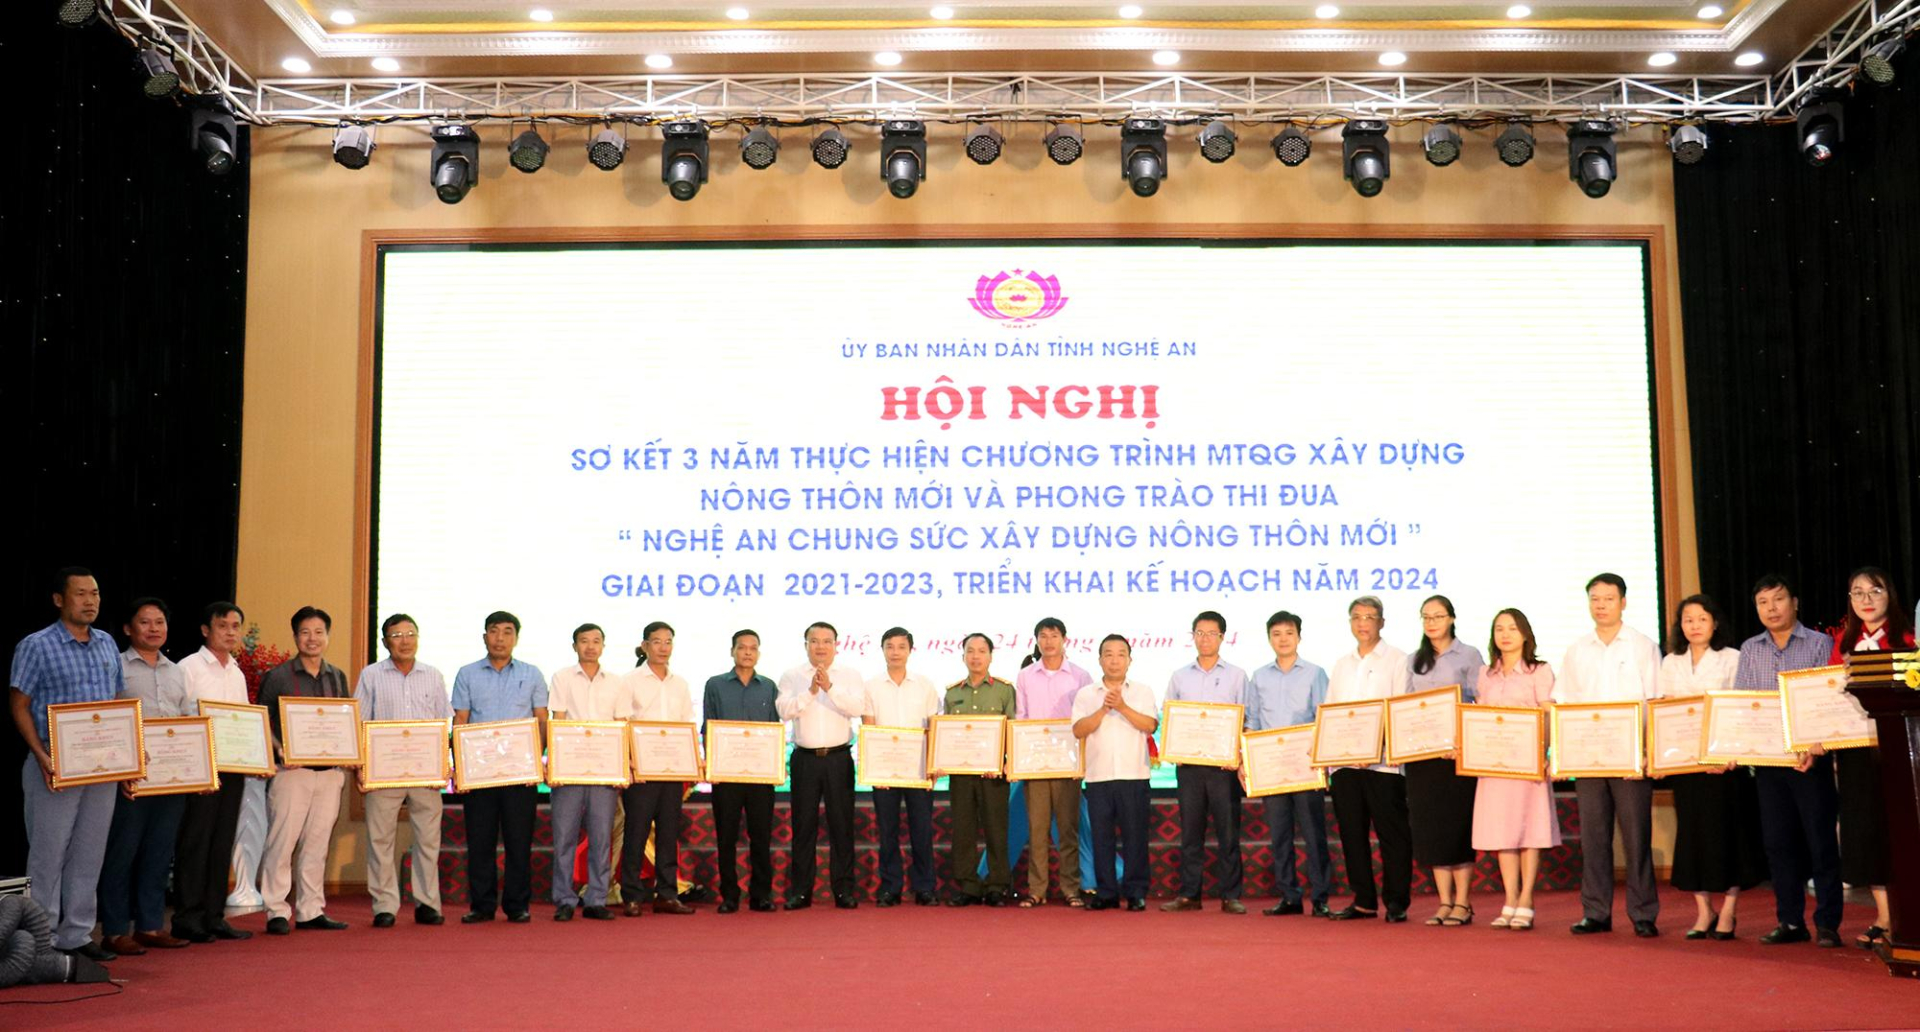 Trong 3 năm qua, tổng nguồn vốn huy động thực hiện chương trình nông thôn mới tại Nghệ An là hơn 39.000 tỷ đồng.